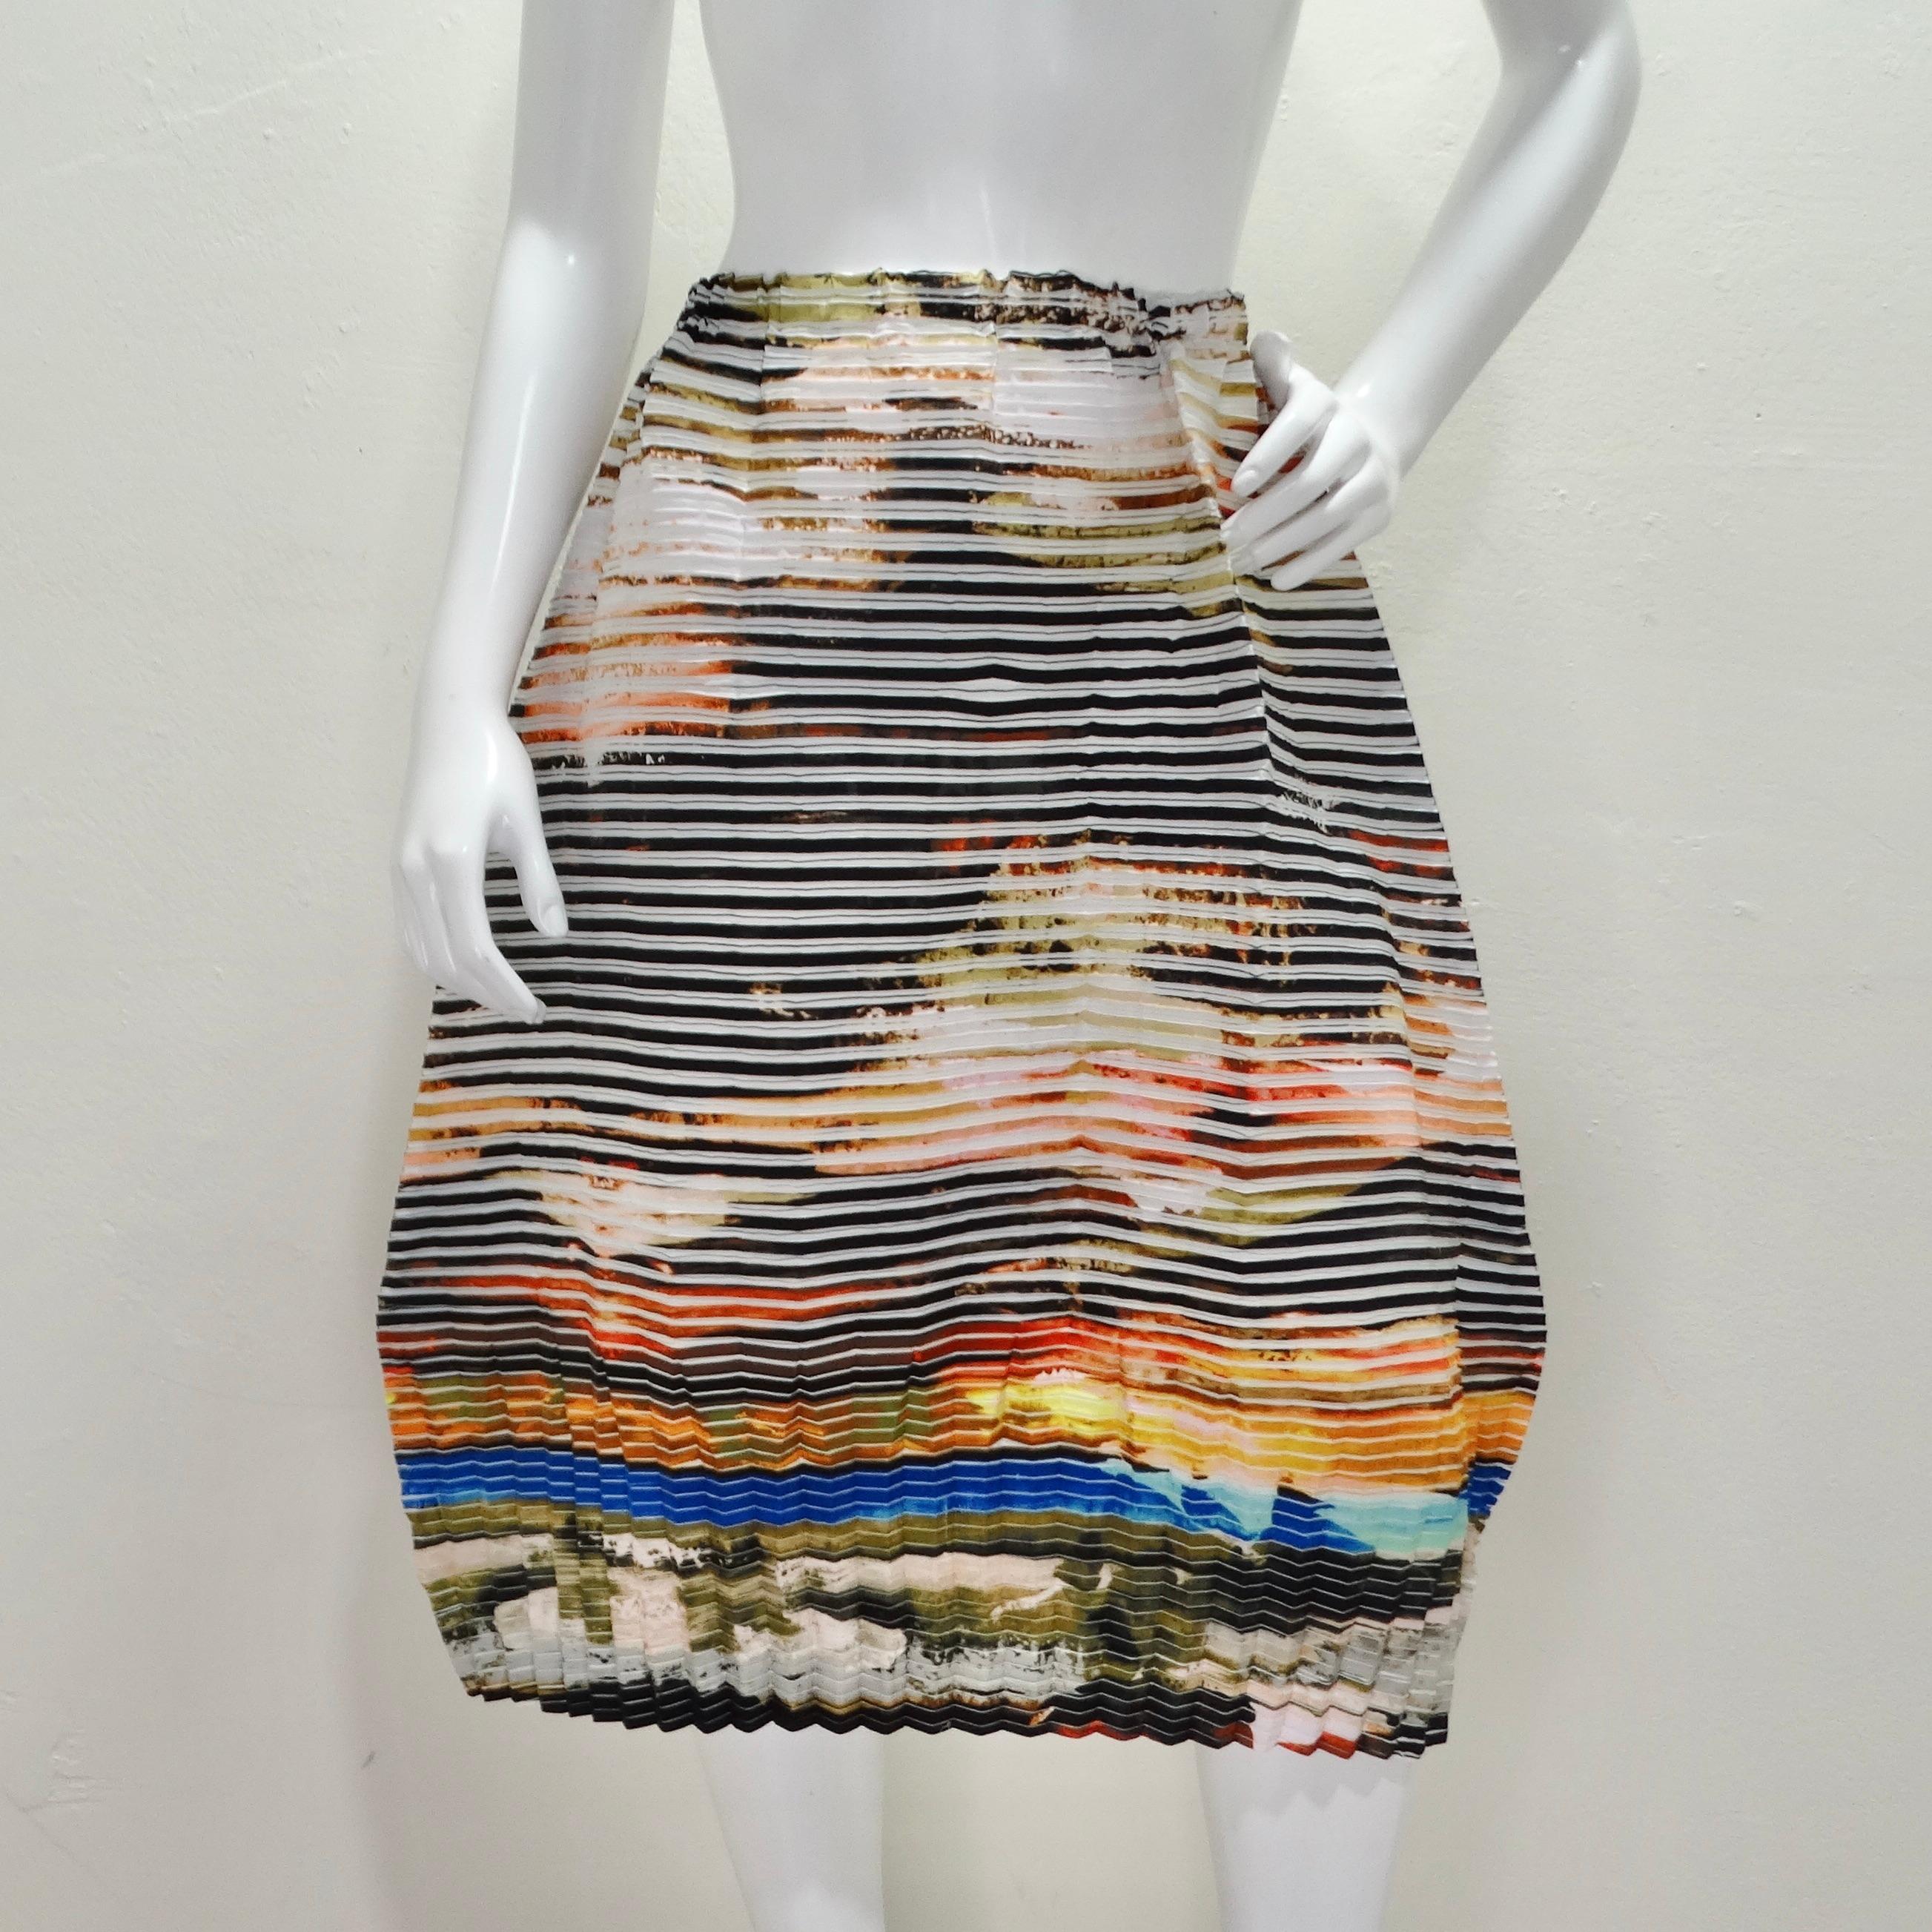 La jupe plissée Issey Miyake Resort 2018 est une pièce captivante qui témoigne de l'utilisation du plissé, signature de la marque, et d'une conception textile innovante. Cette jupe présente un imprimé aquarelle multicolore unique, superposé à des